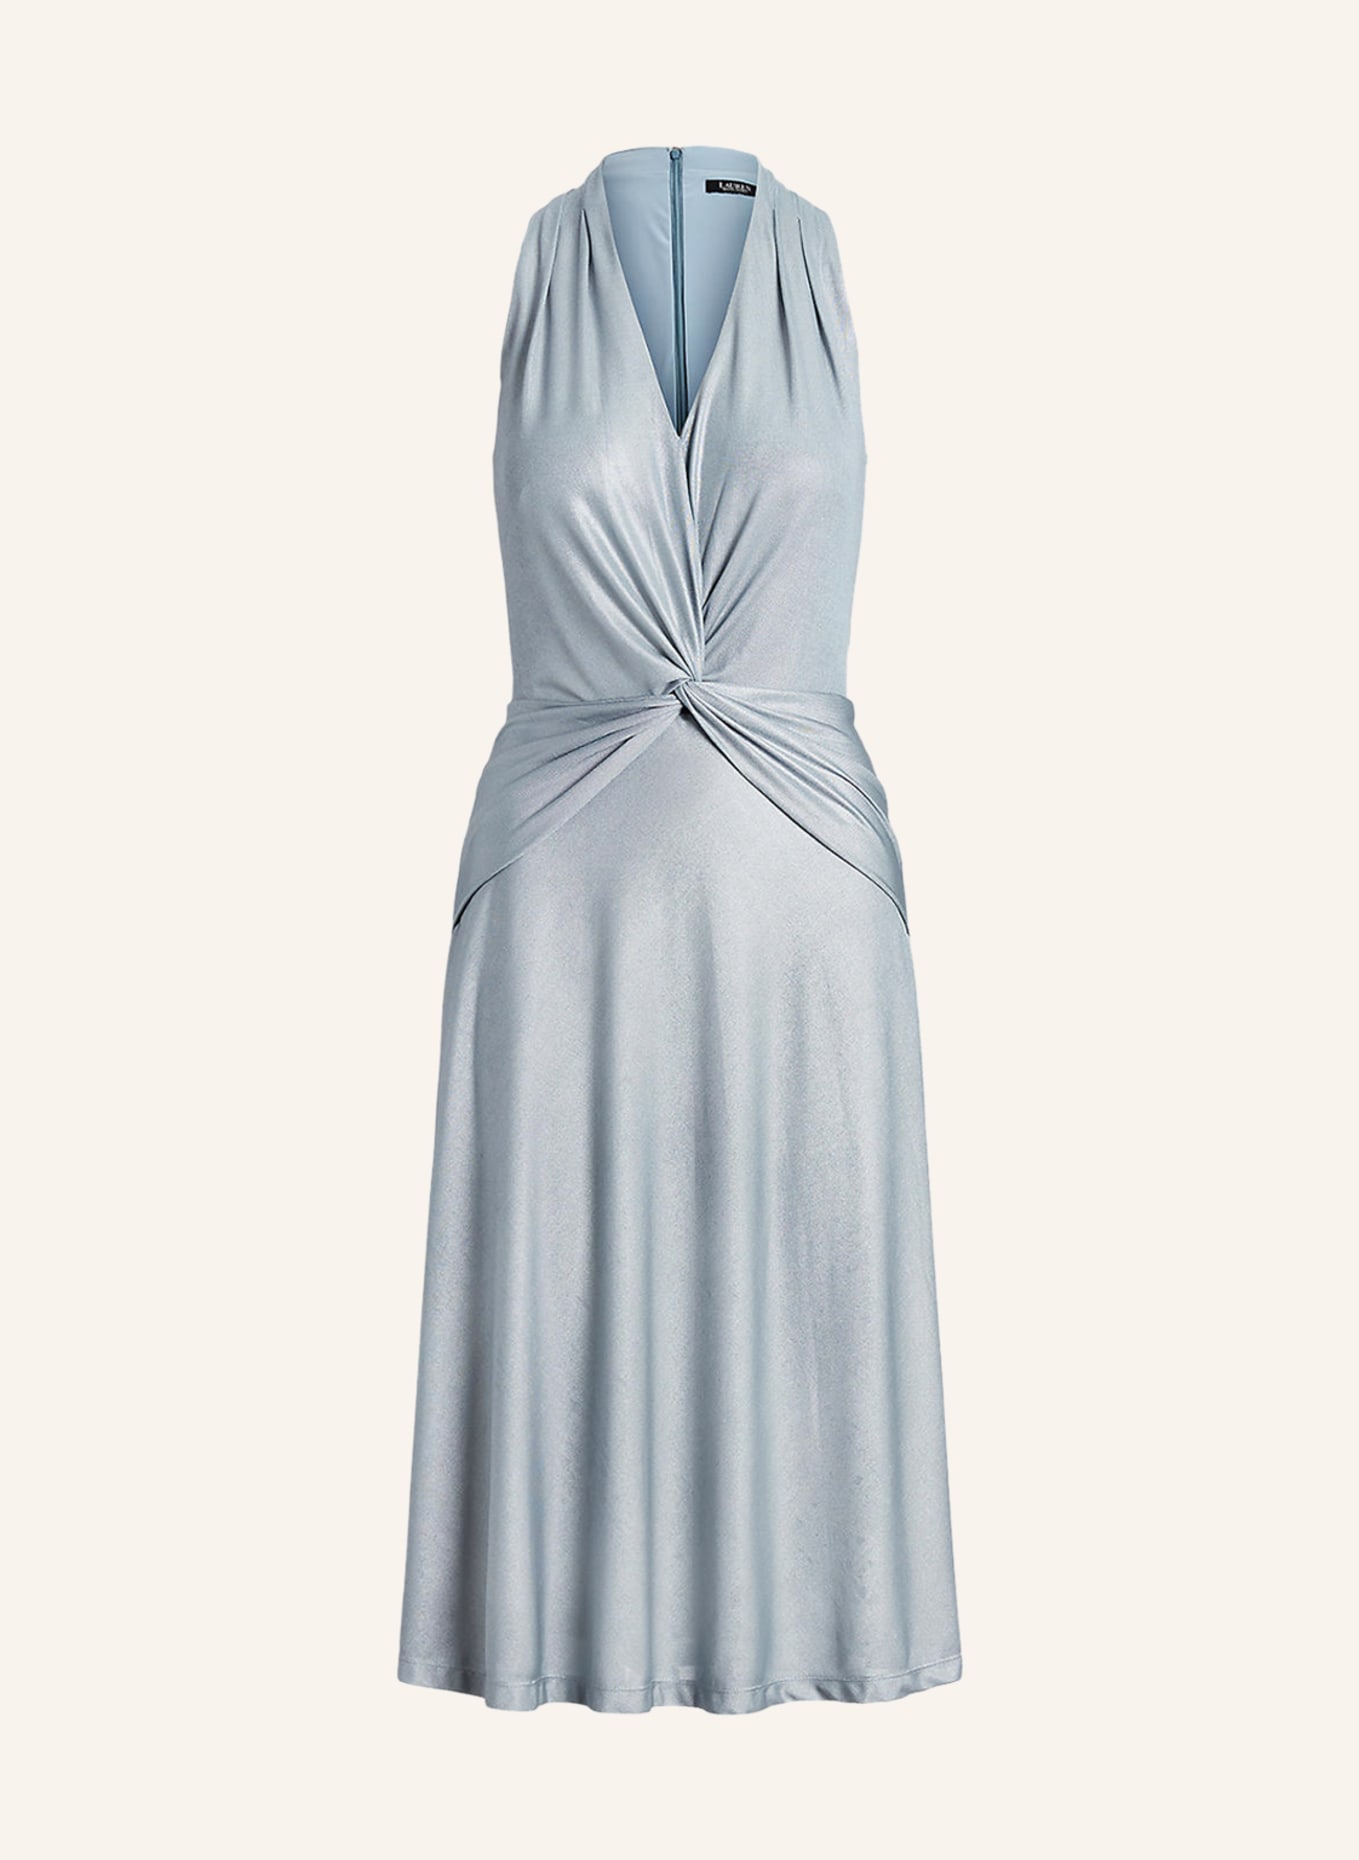 LAUREN RALPH LAUREN Jersey dress KADAMBARI with glitter thread, Color: LIGHT BLUE (Image 1)